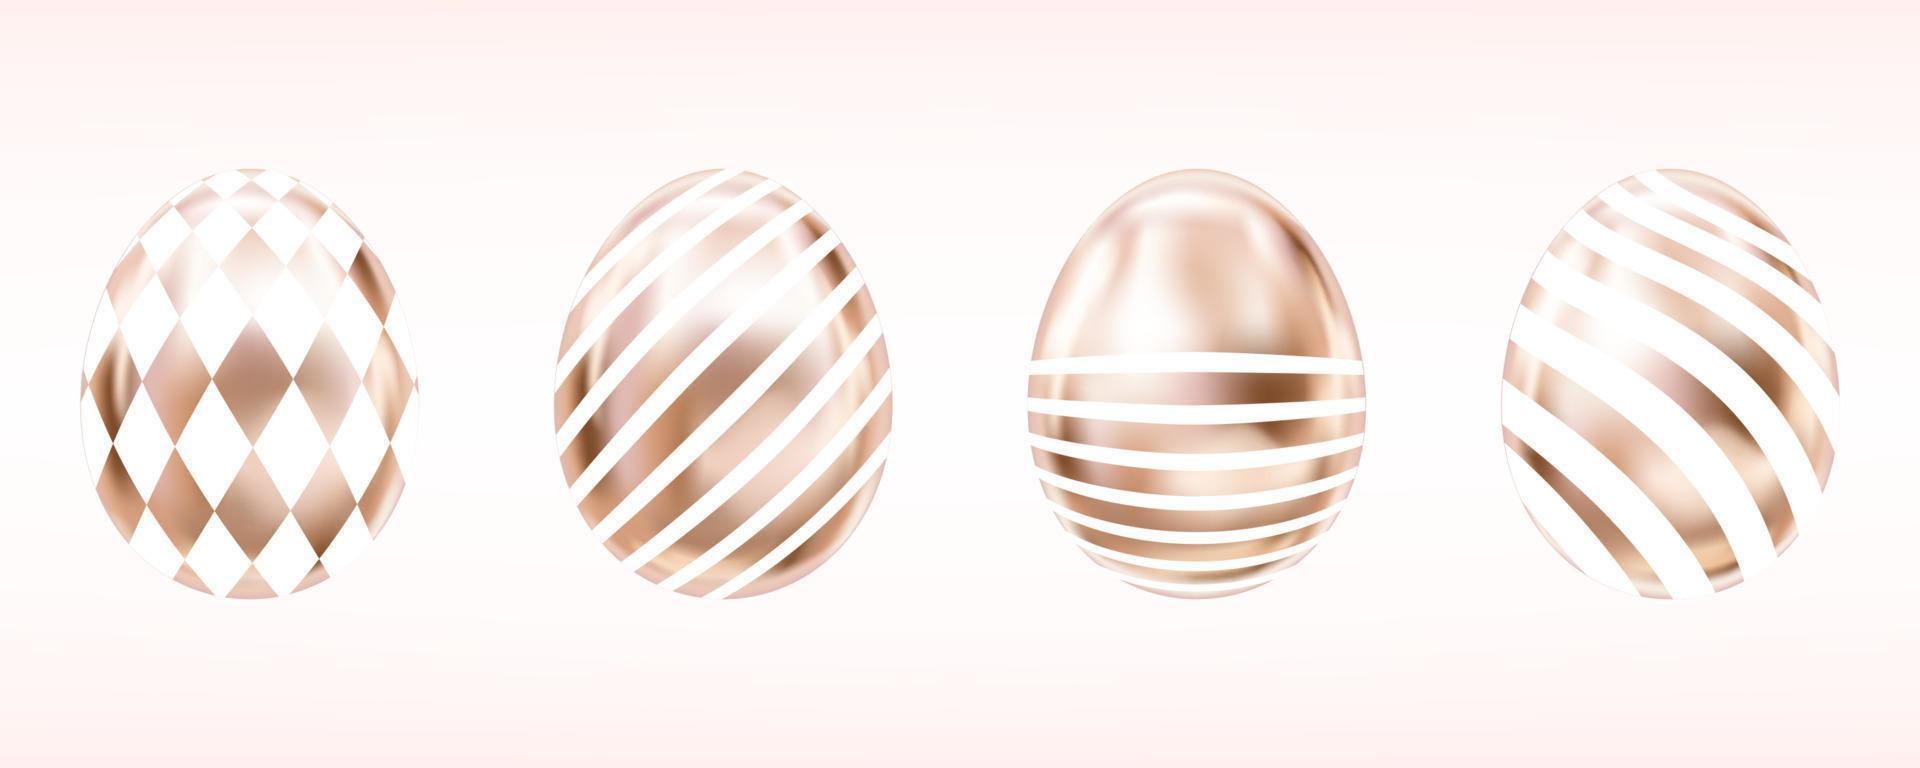 fyra ögonkast metalliska ägg i rosa färg med vit domino och ränder. isolerade föremål för påskdekoration vektor